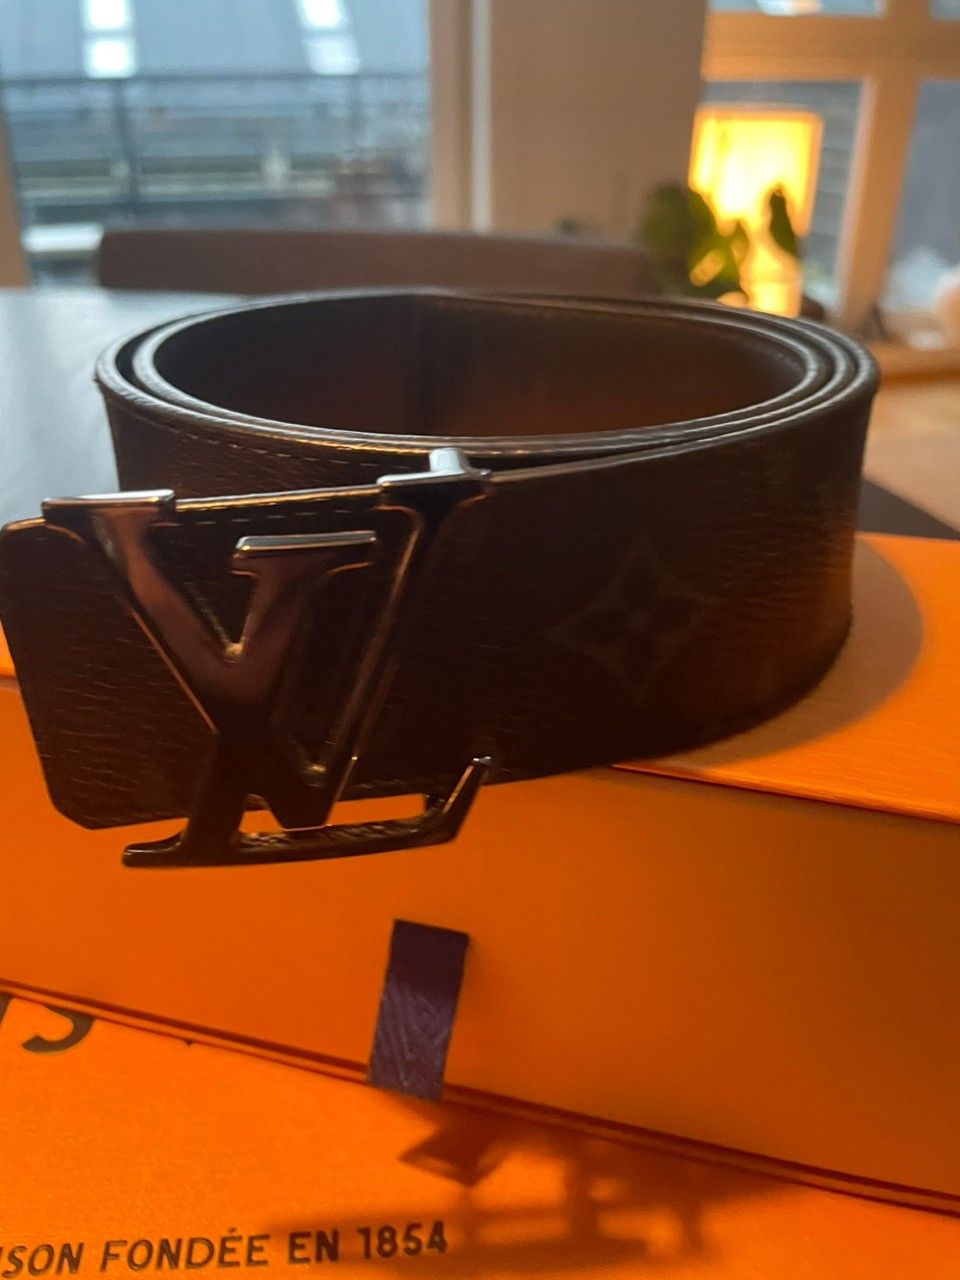 Twist belt Louis Vuitton Black size 80 cm in Other - 34645378